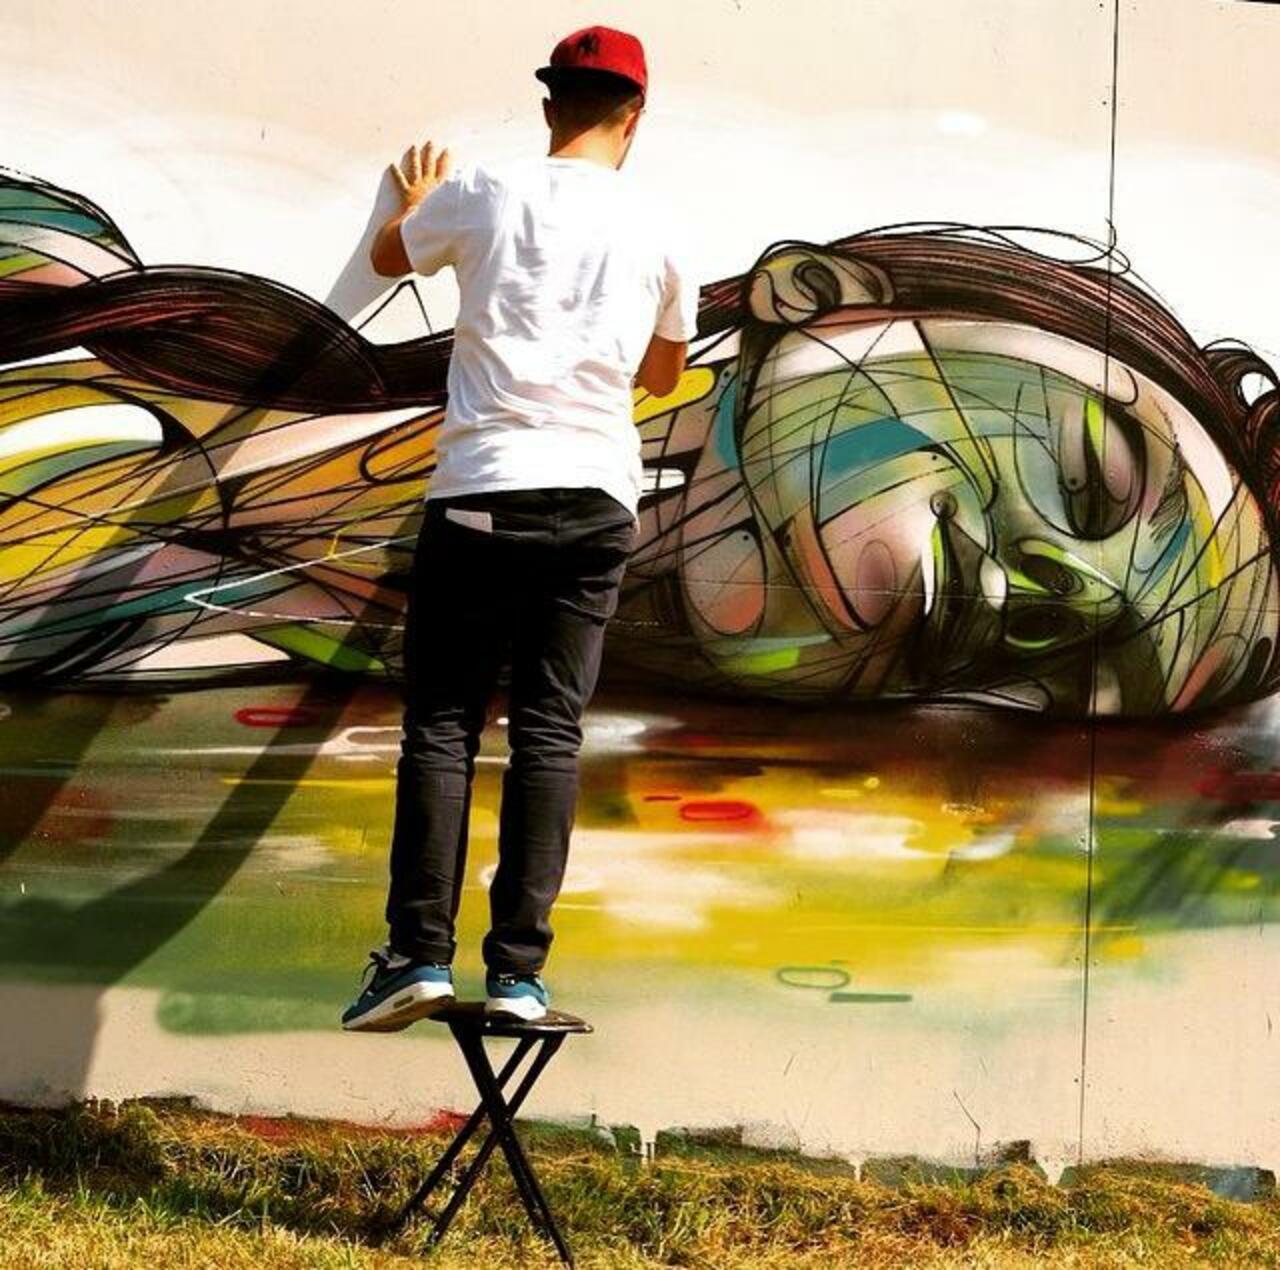 Street Art by the artist • Hopare 

#art #arte #graffiti #streetart http://t.co/UQhQMsoOaC